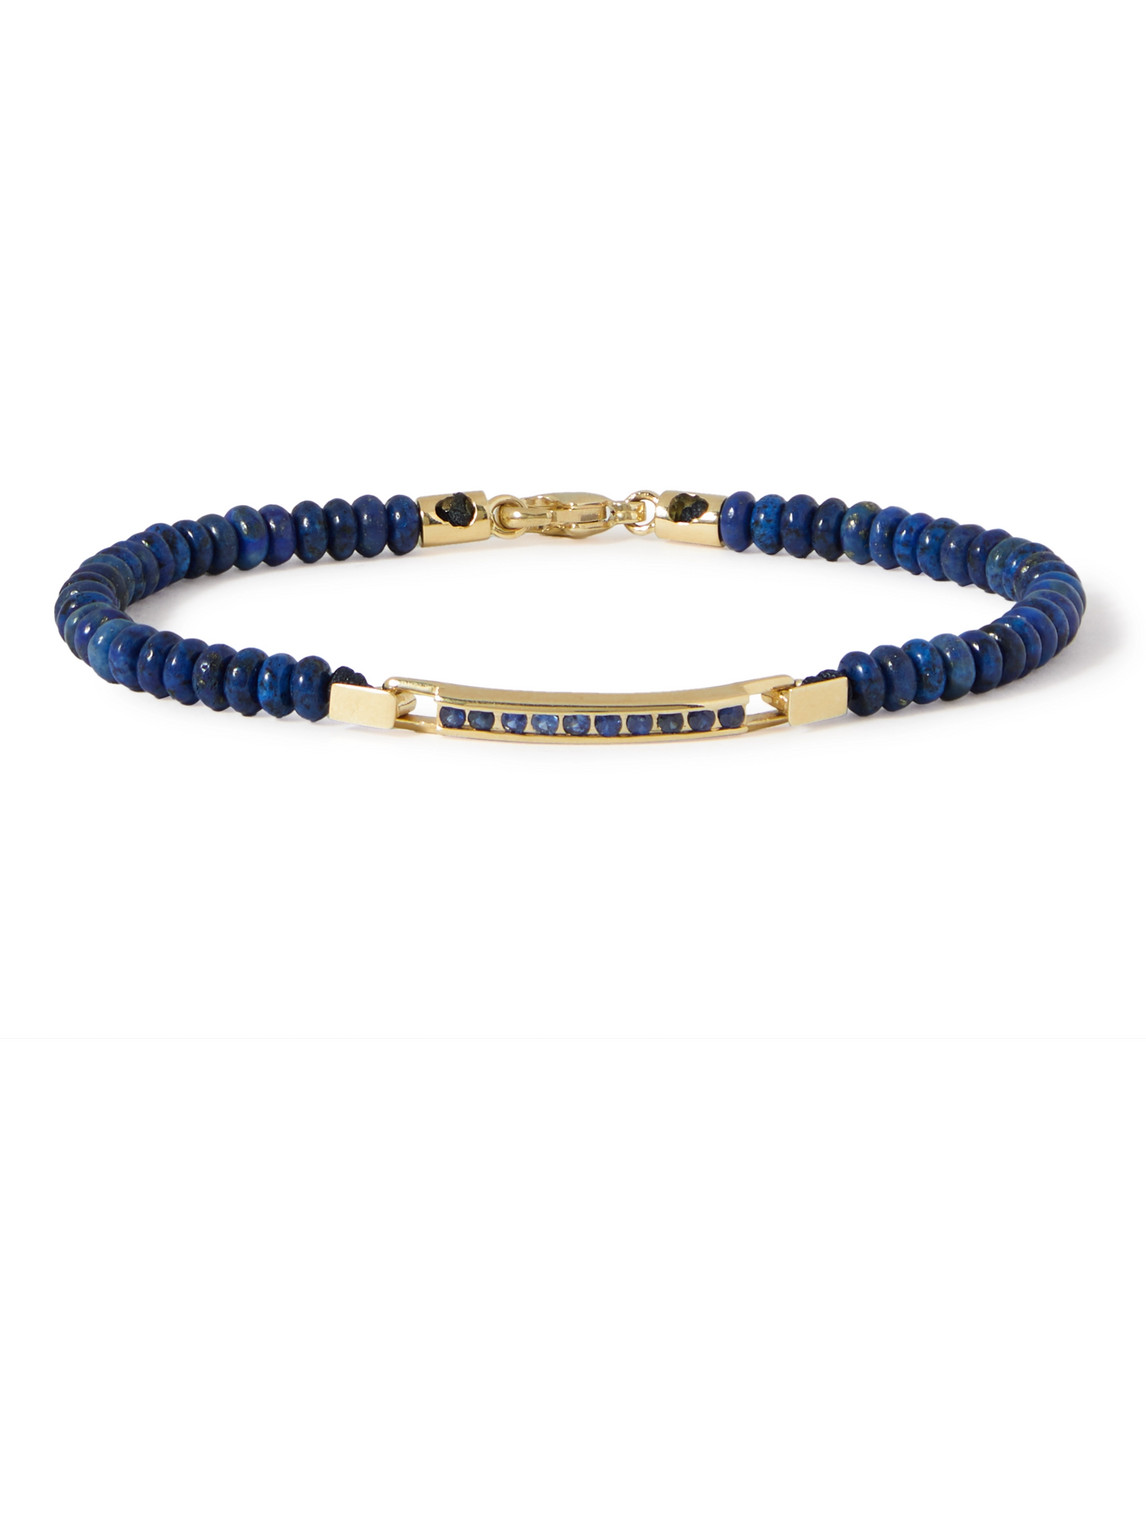 Luis Morais Gold, Lapis Lazuli And Sapphire Bracelet In Blue